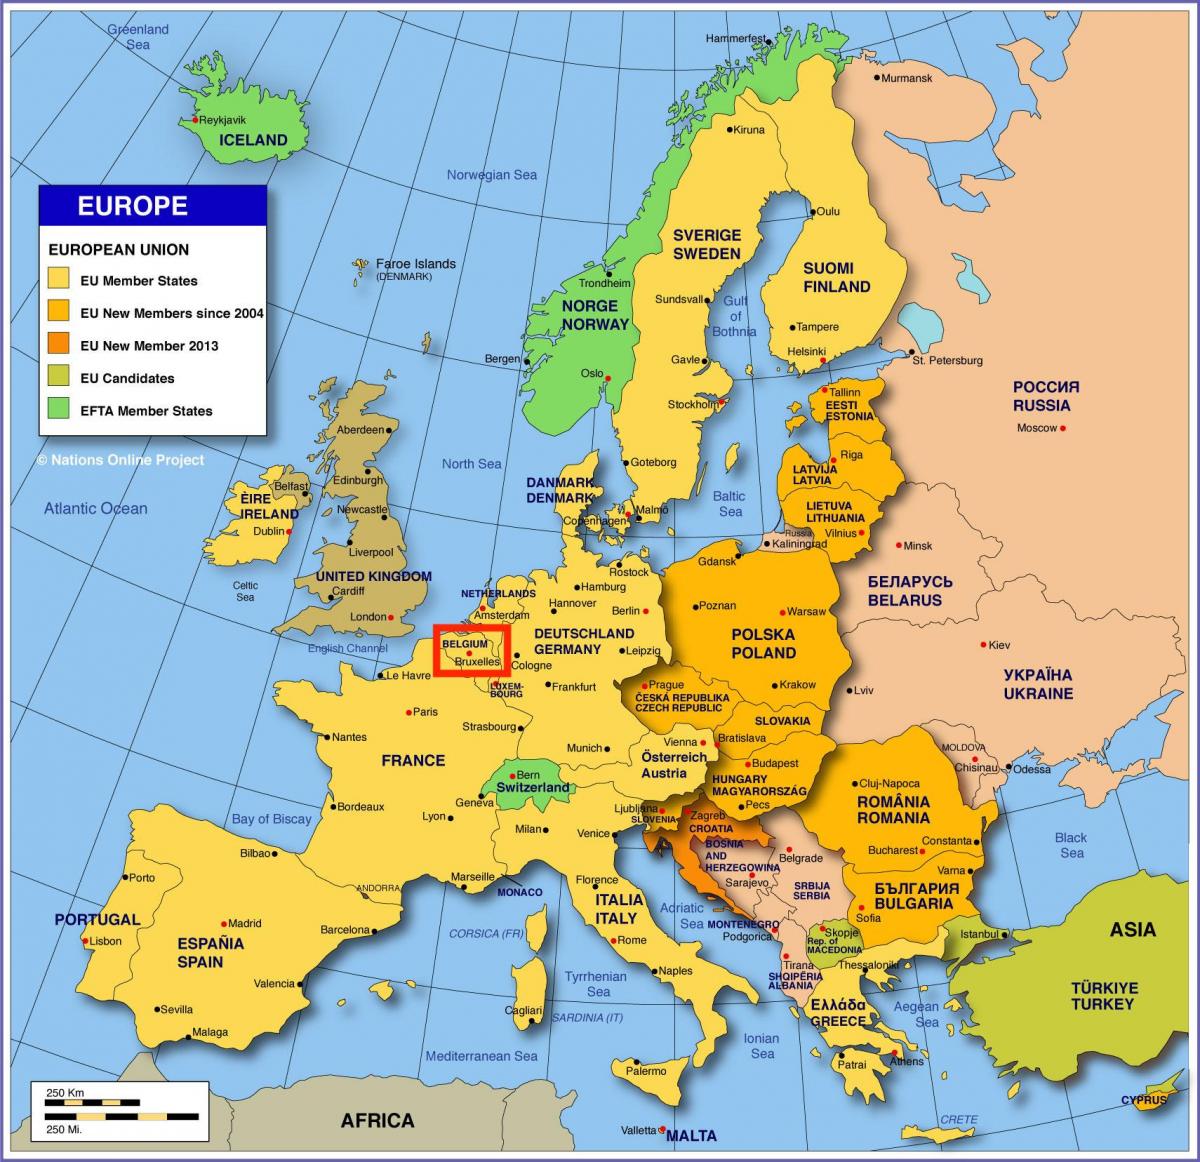 欧洲地图显示布鲁塞尔